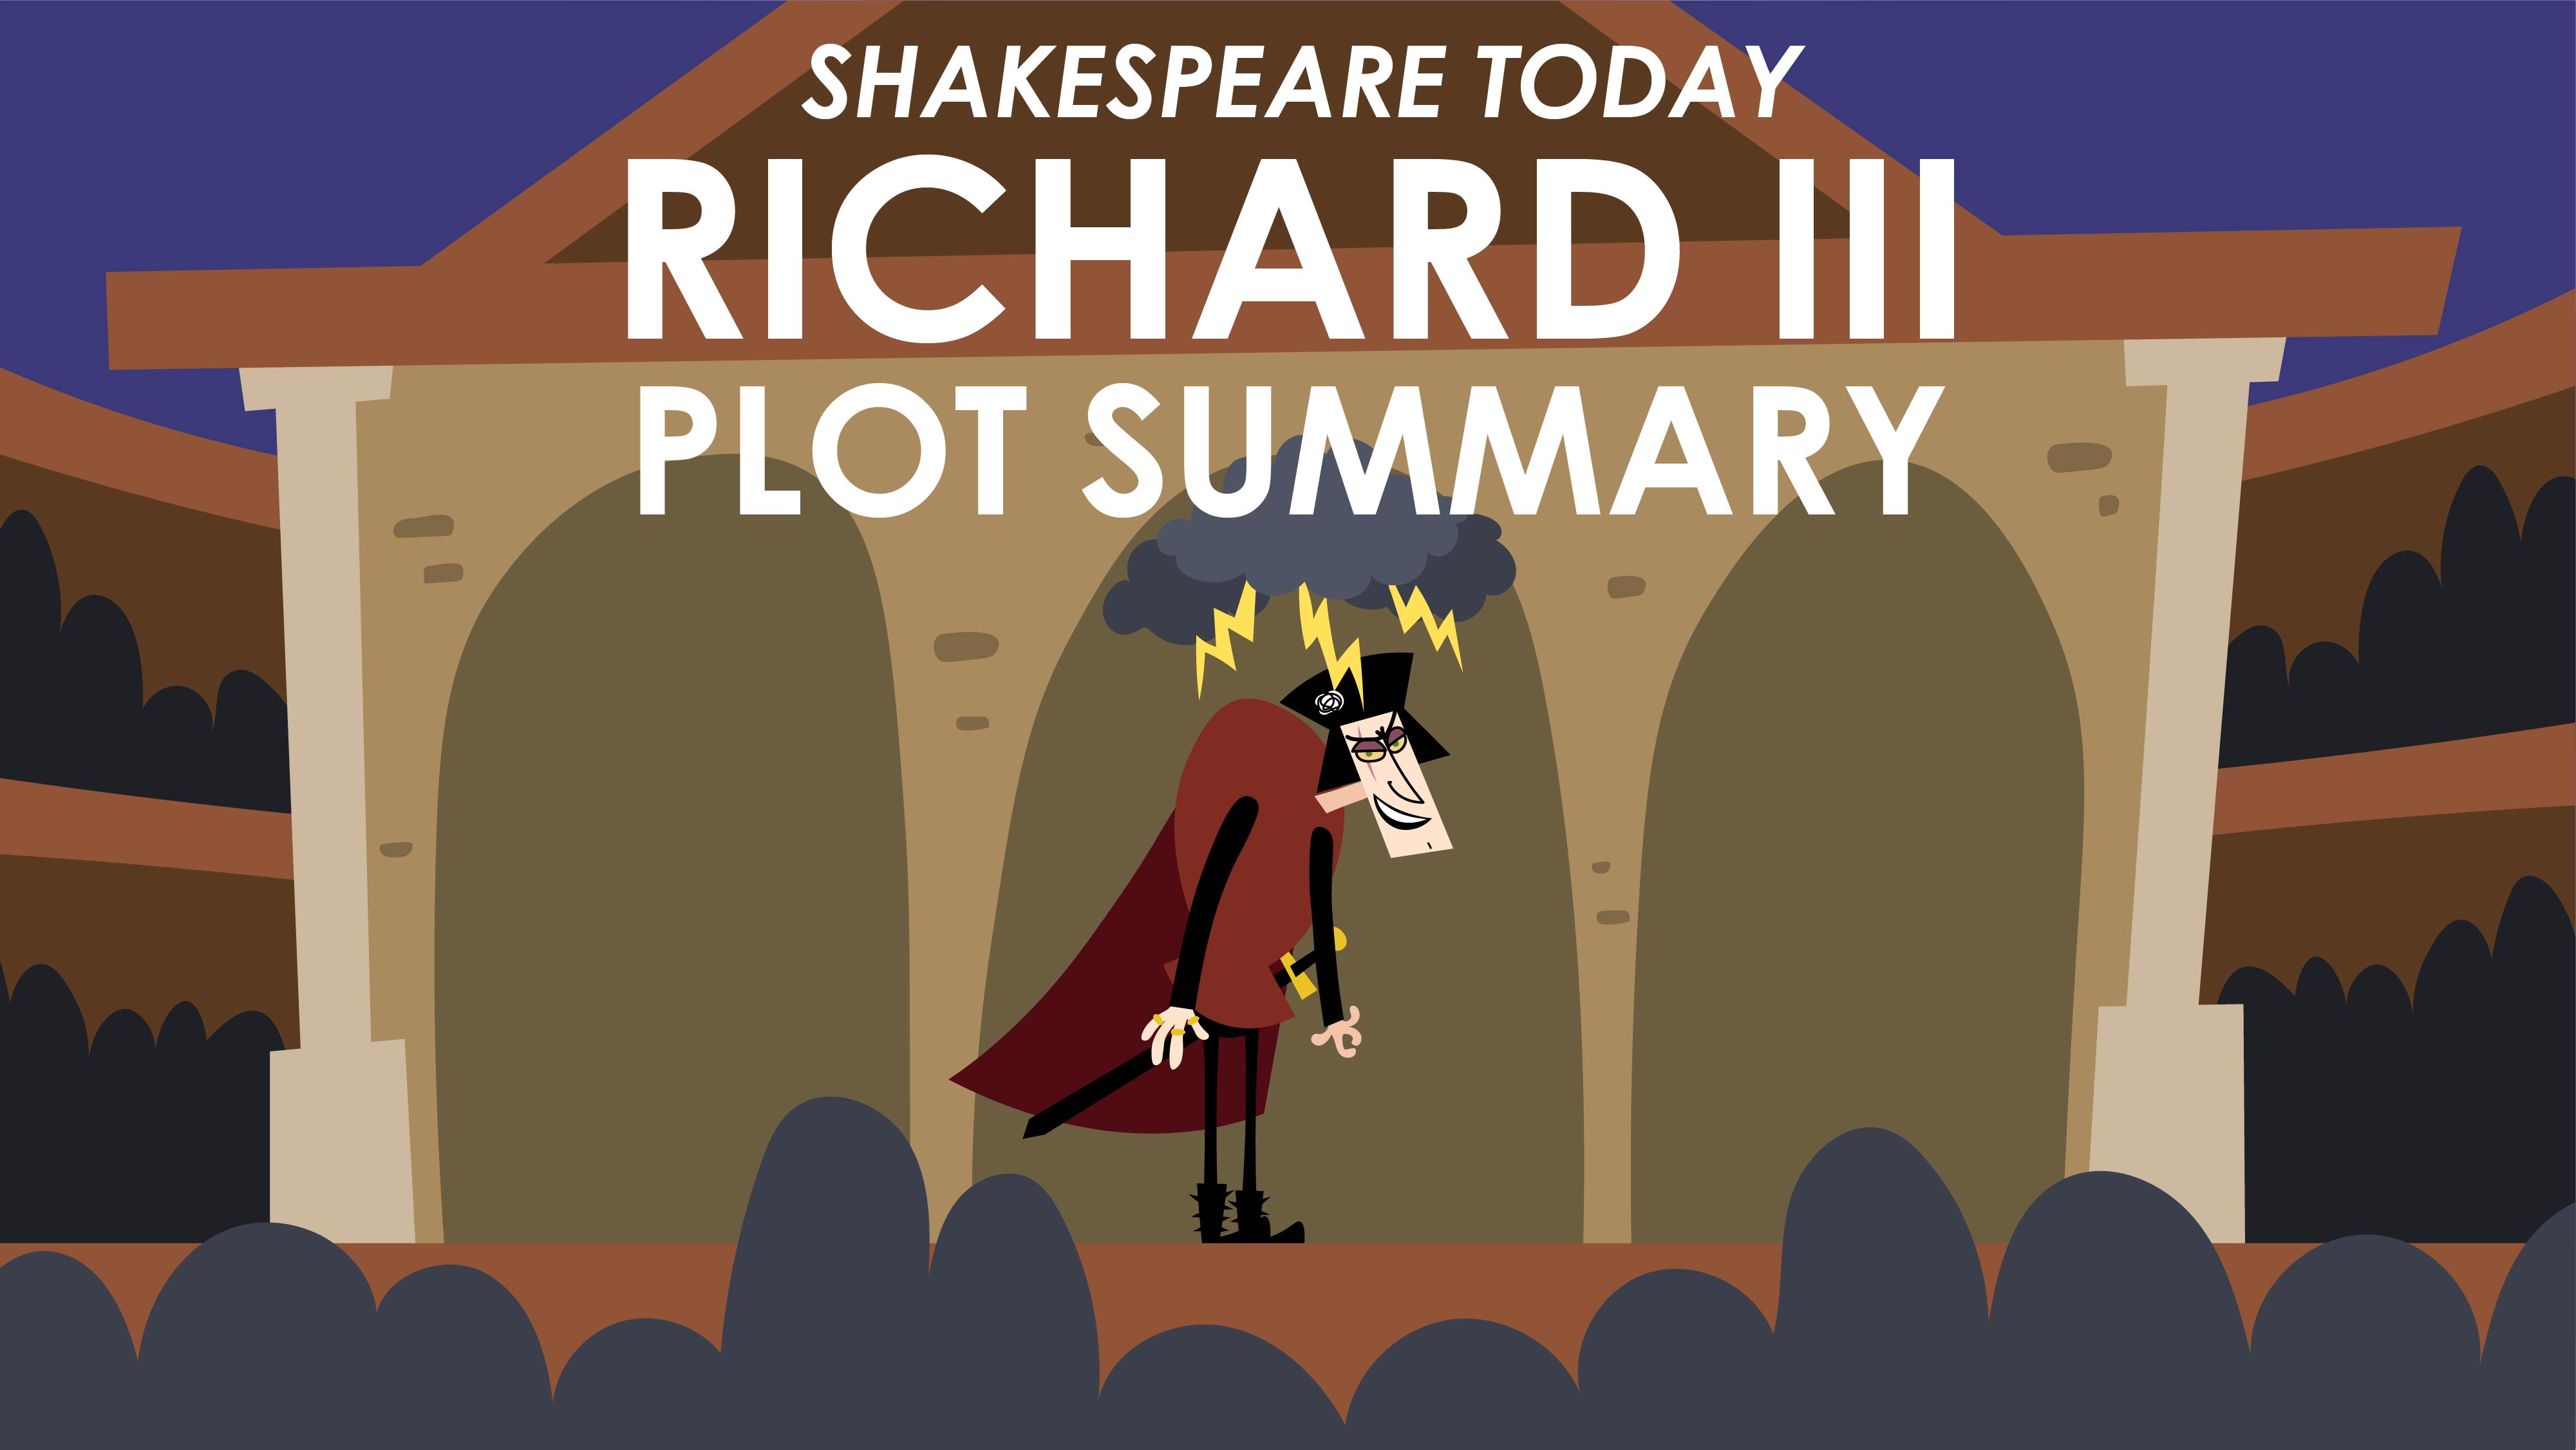 Richard III Plot Summary - Shakespeare Today Series